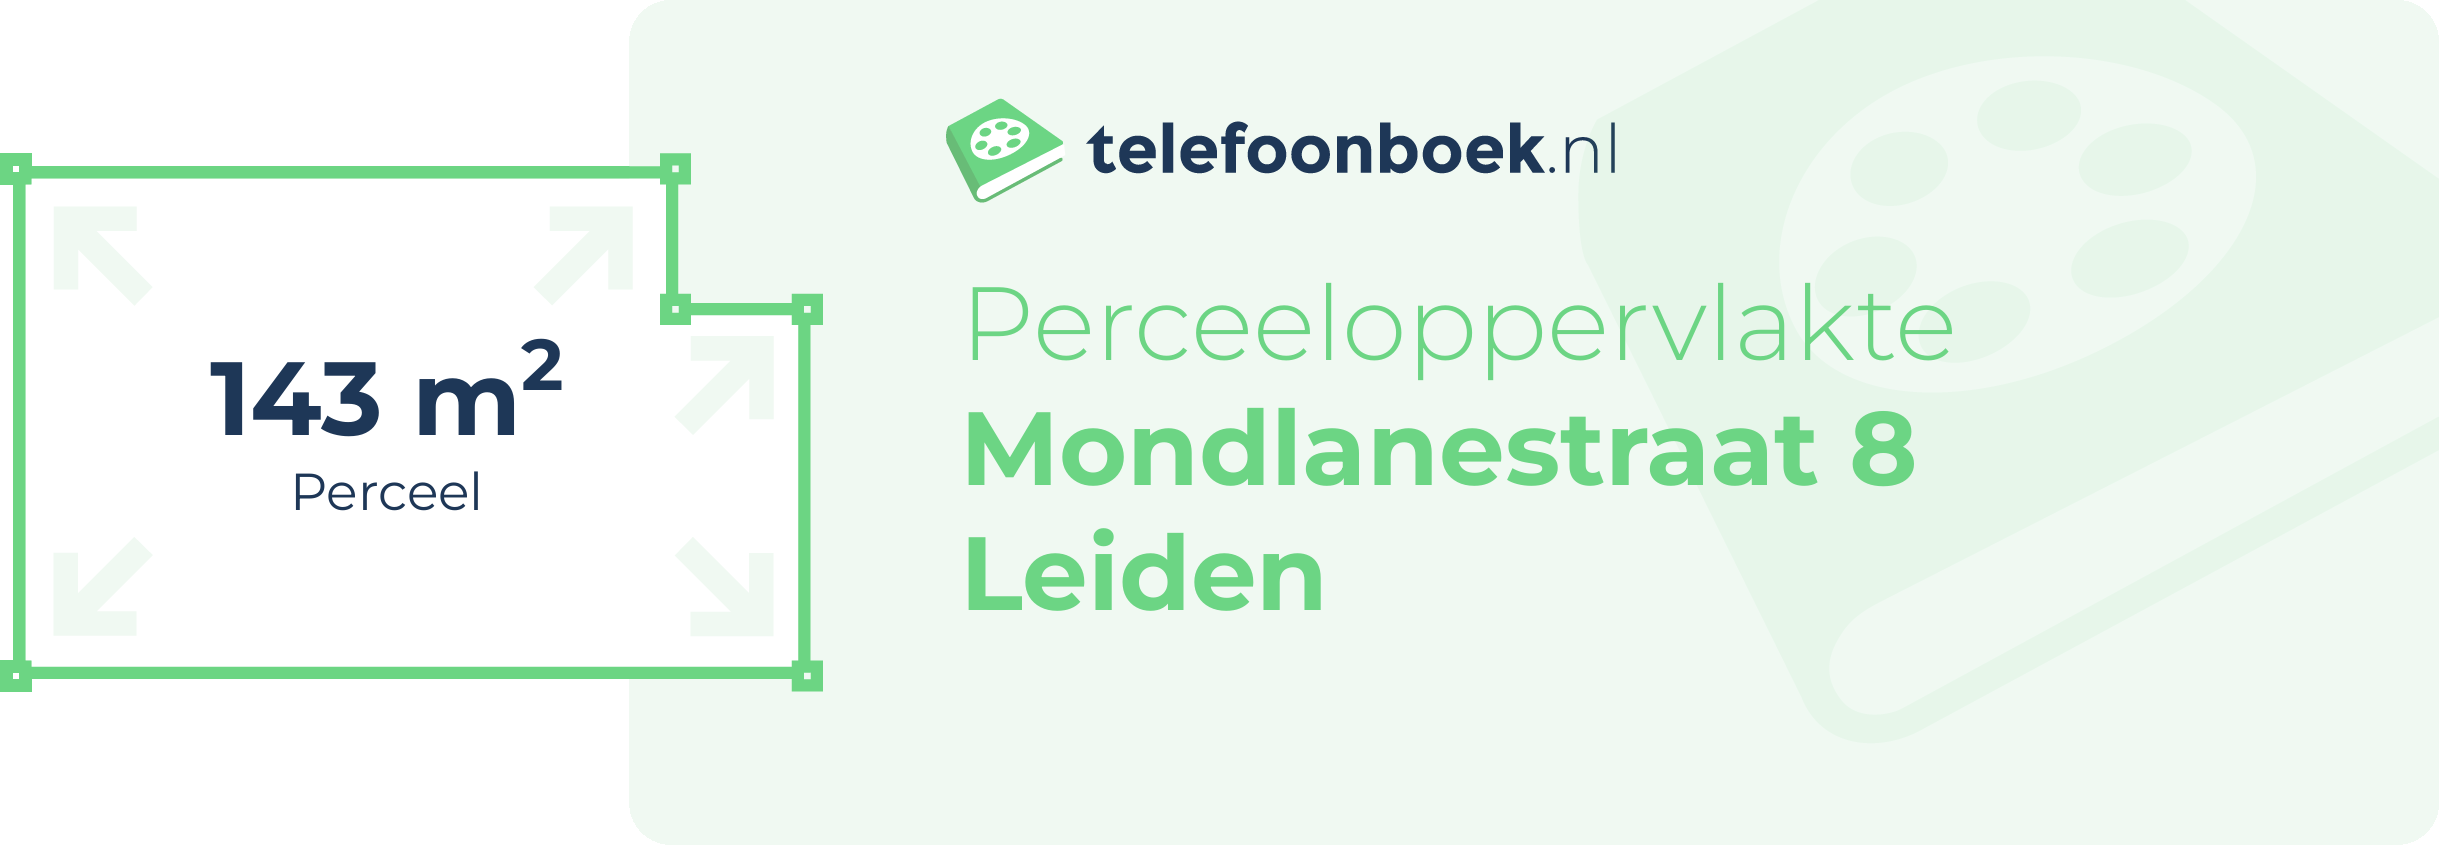 Perceeloppervlakte Mondlanestraat 8 Leiden